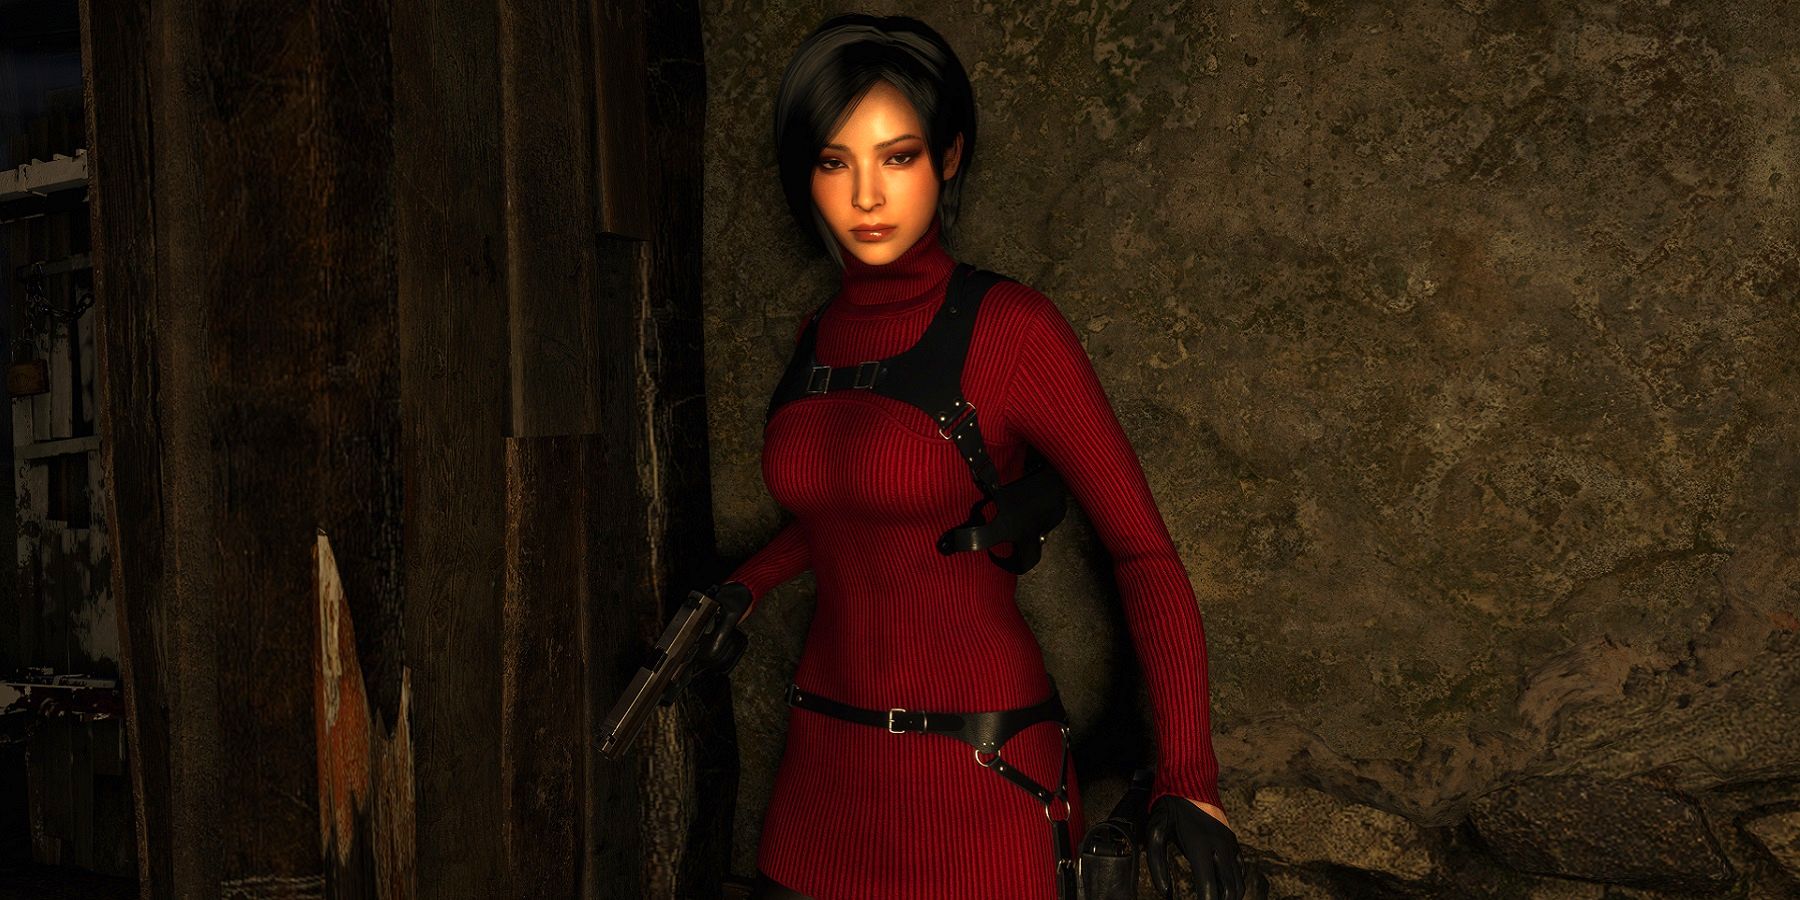 Resident Evil 4 Ada Wong  Resident evil girl, Ada resident evil